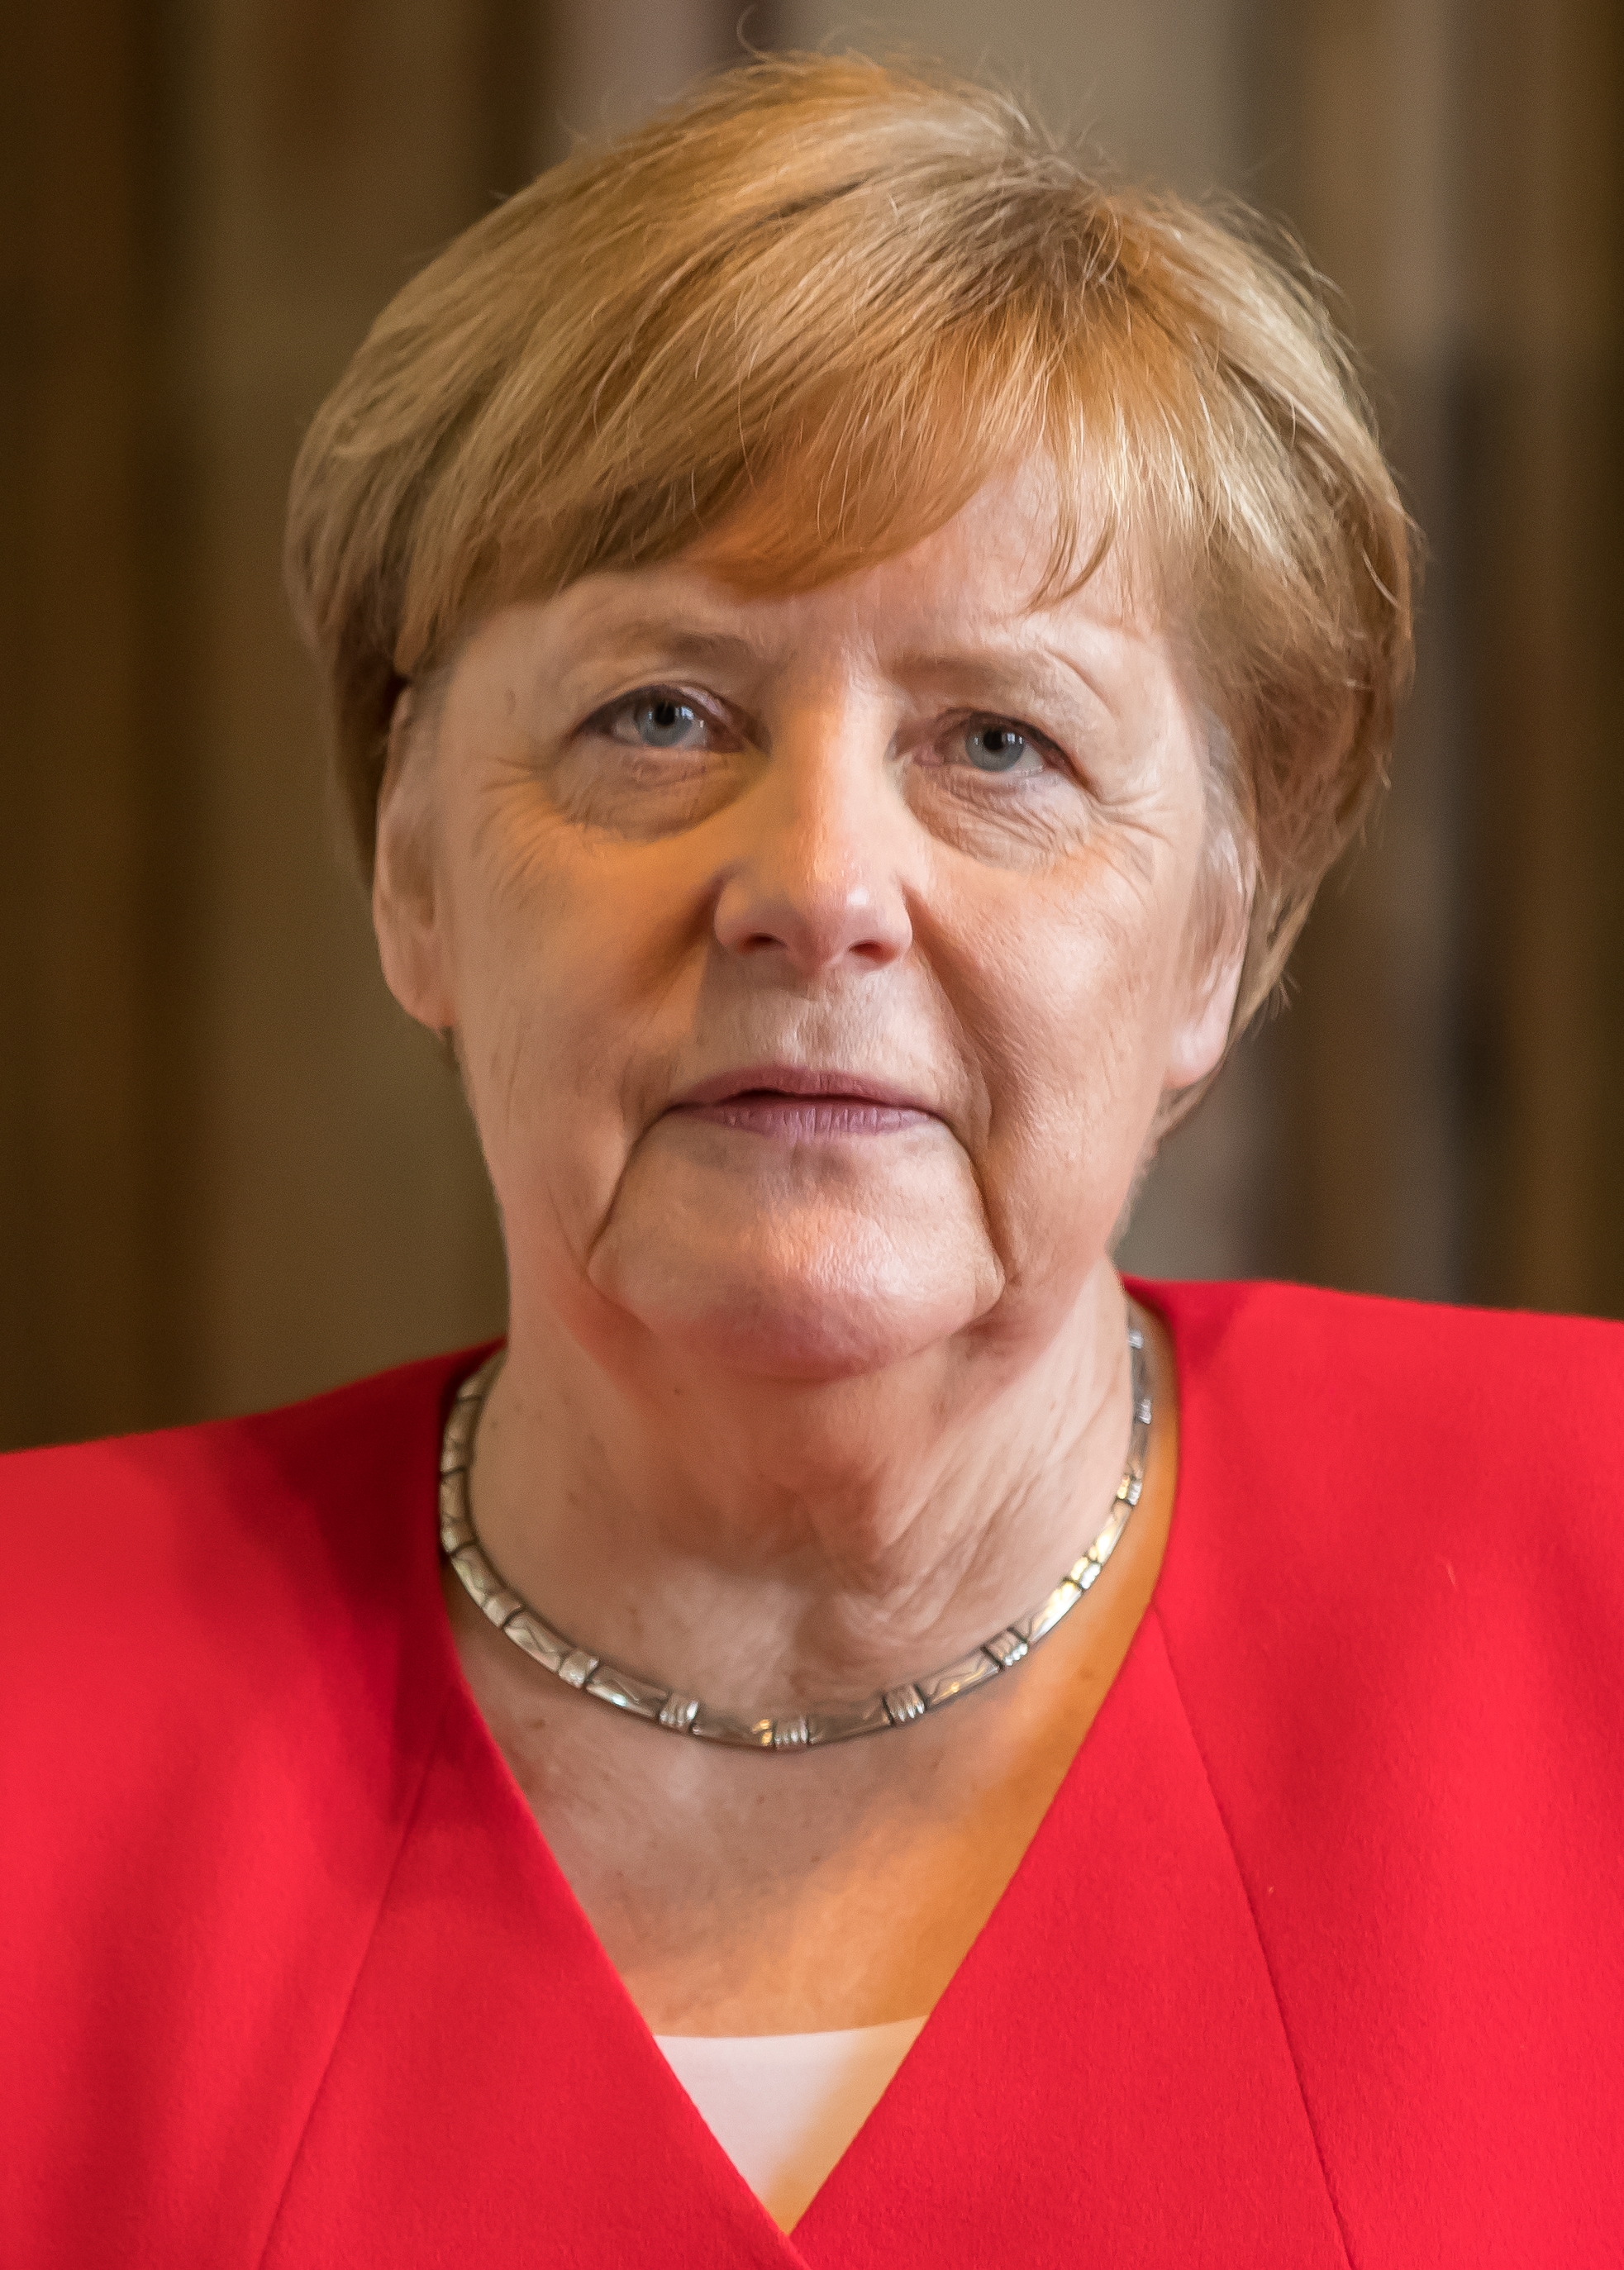 auteur Angela Merkel de la citation Les alliances font partie de notre destin en tant que nation, de notre avenir en tant que nation et c'est ce qui me guide dans ma politique, ce qui guide mon gouvernement dans son ensemble.